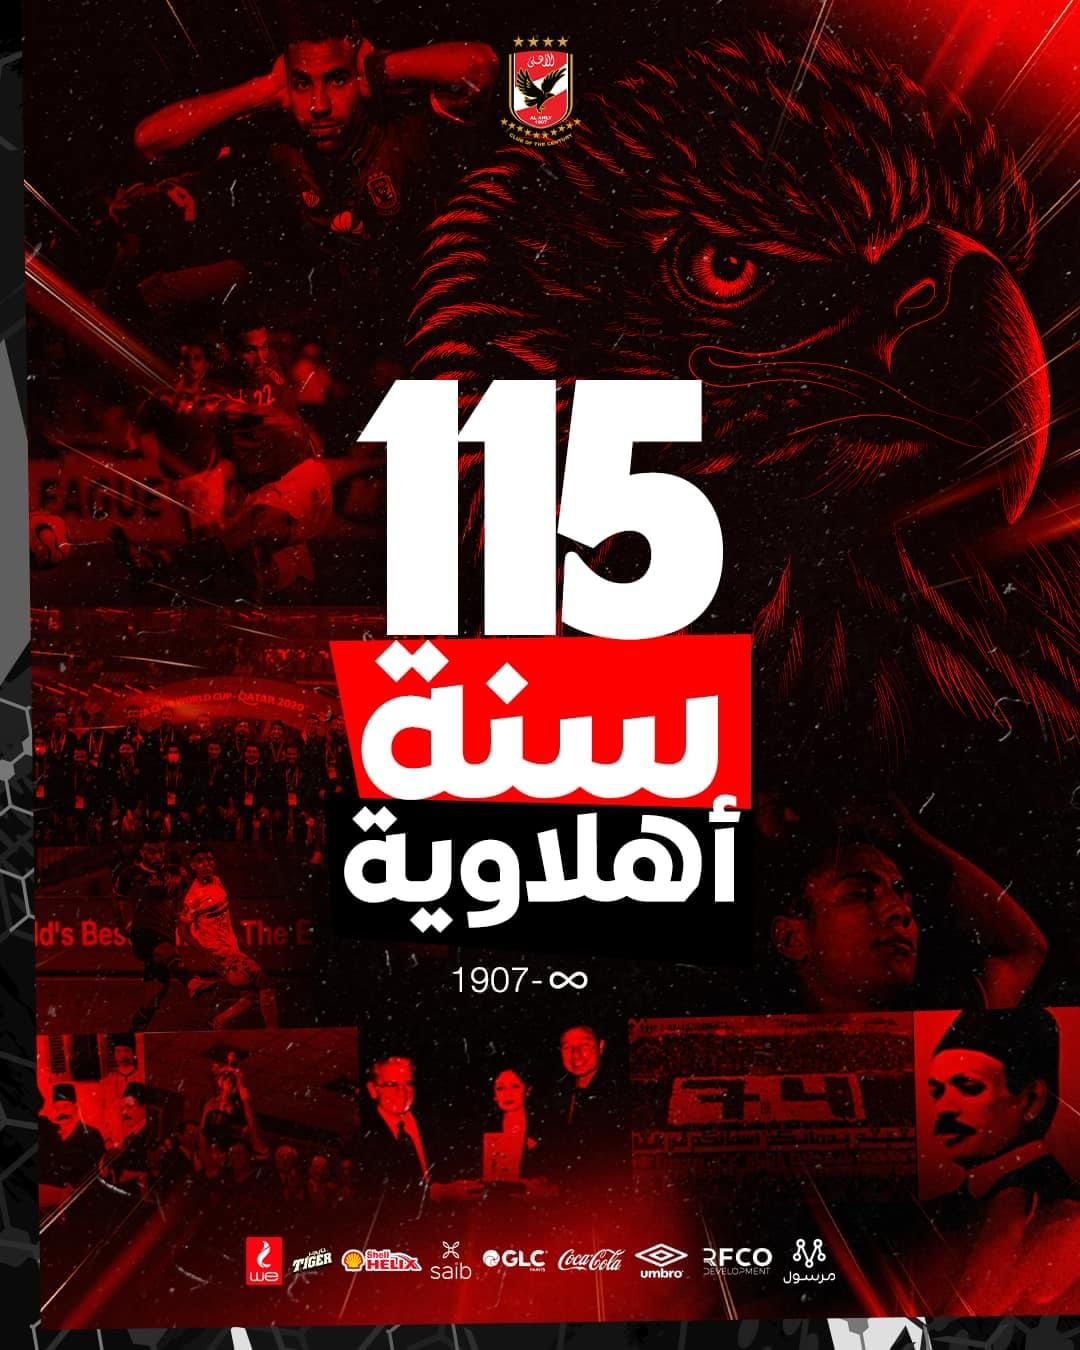 أحمد شوبير يهنئ النادي الأهلي بمناسبة 115 عام على تأسيسه 2